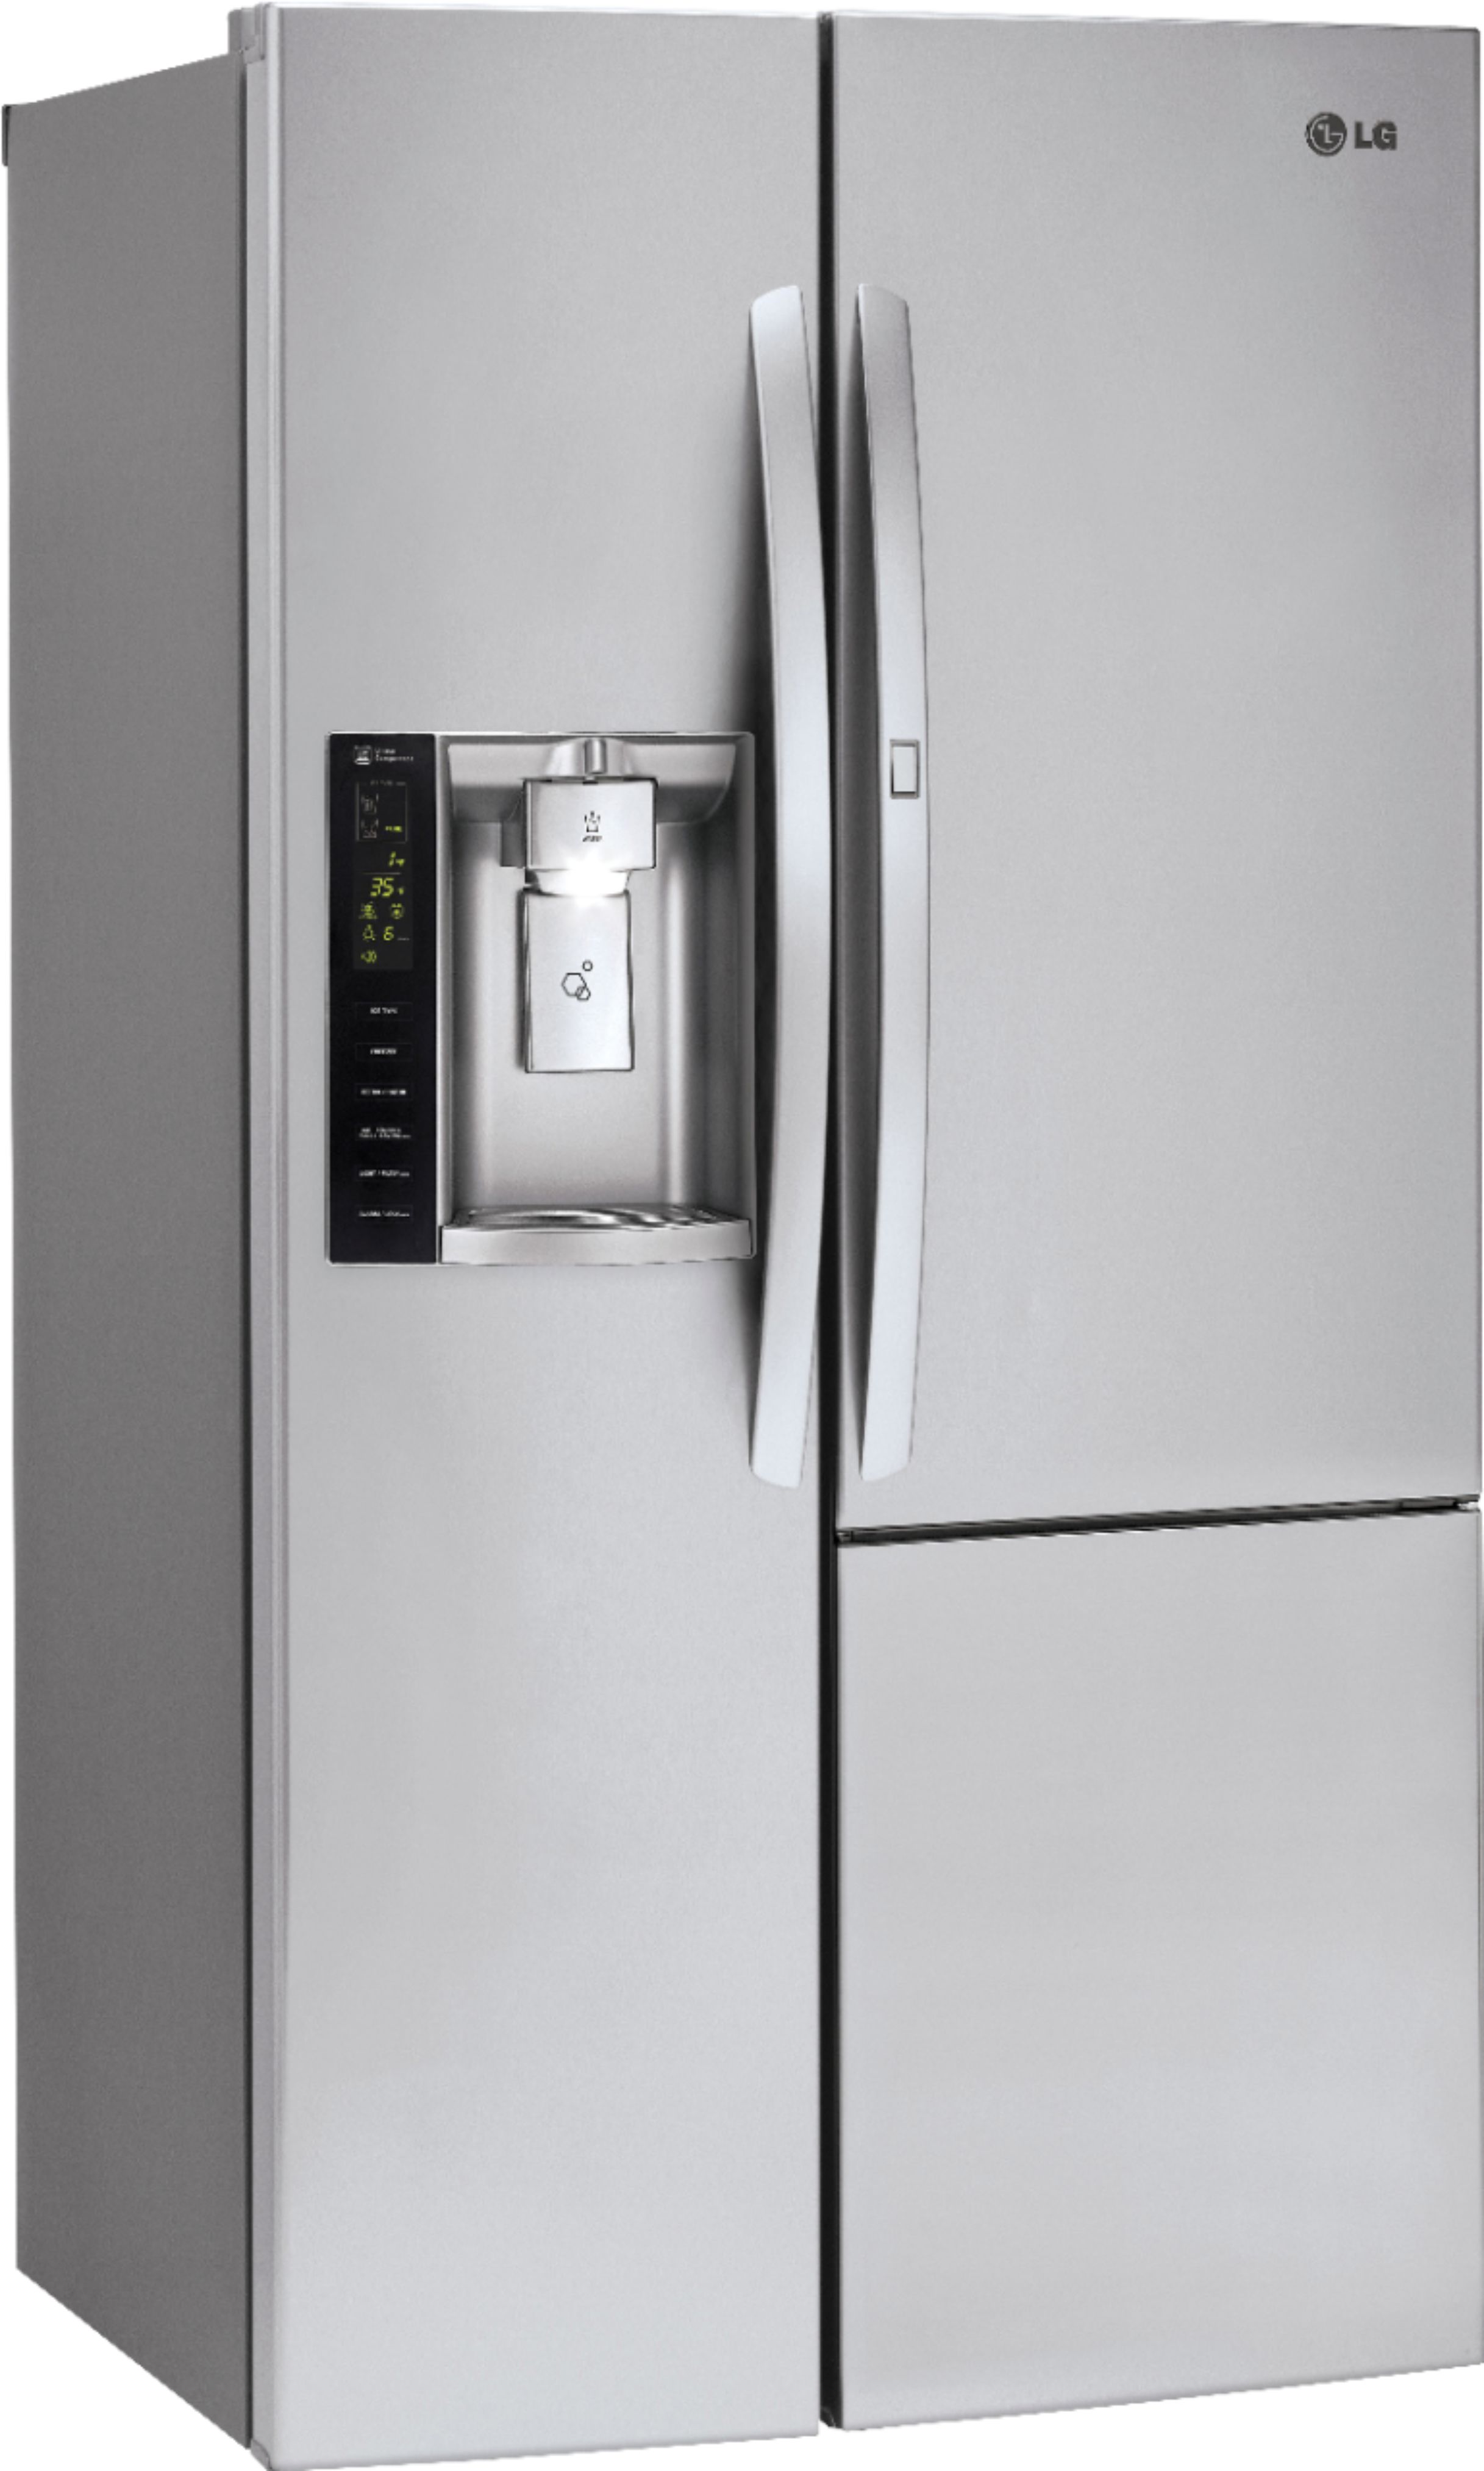 Lg Door In Door 26 0 Cu Ft Side By Side Refrigerator With Thru The Door Ice And Water Stainless Steel Lsxs26366s Best Buy